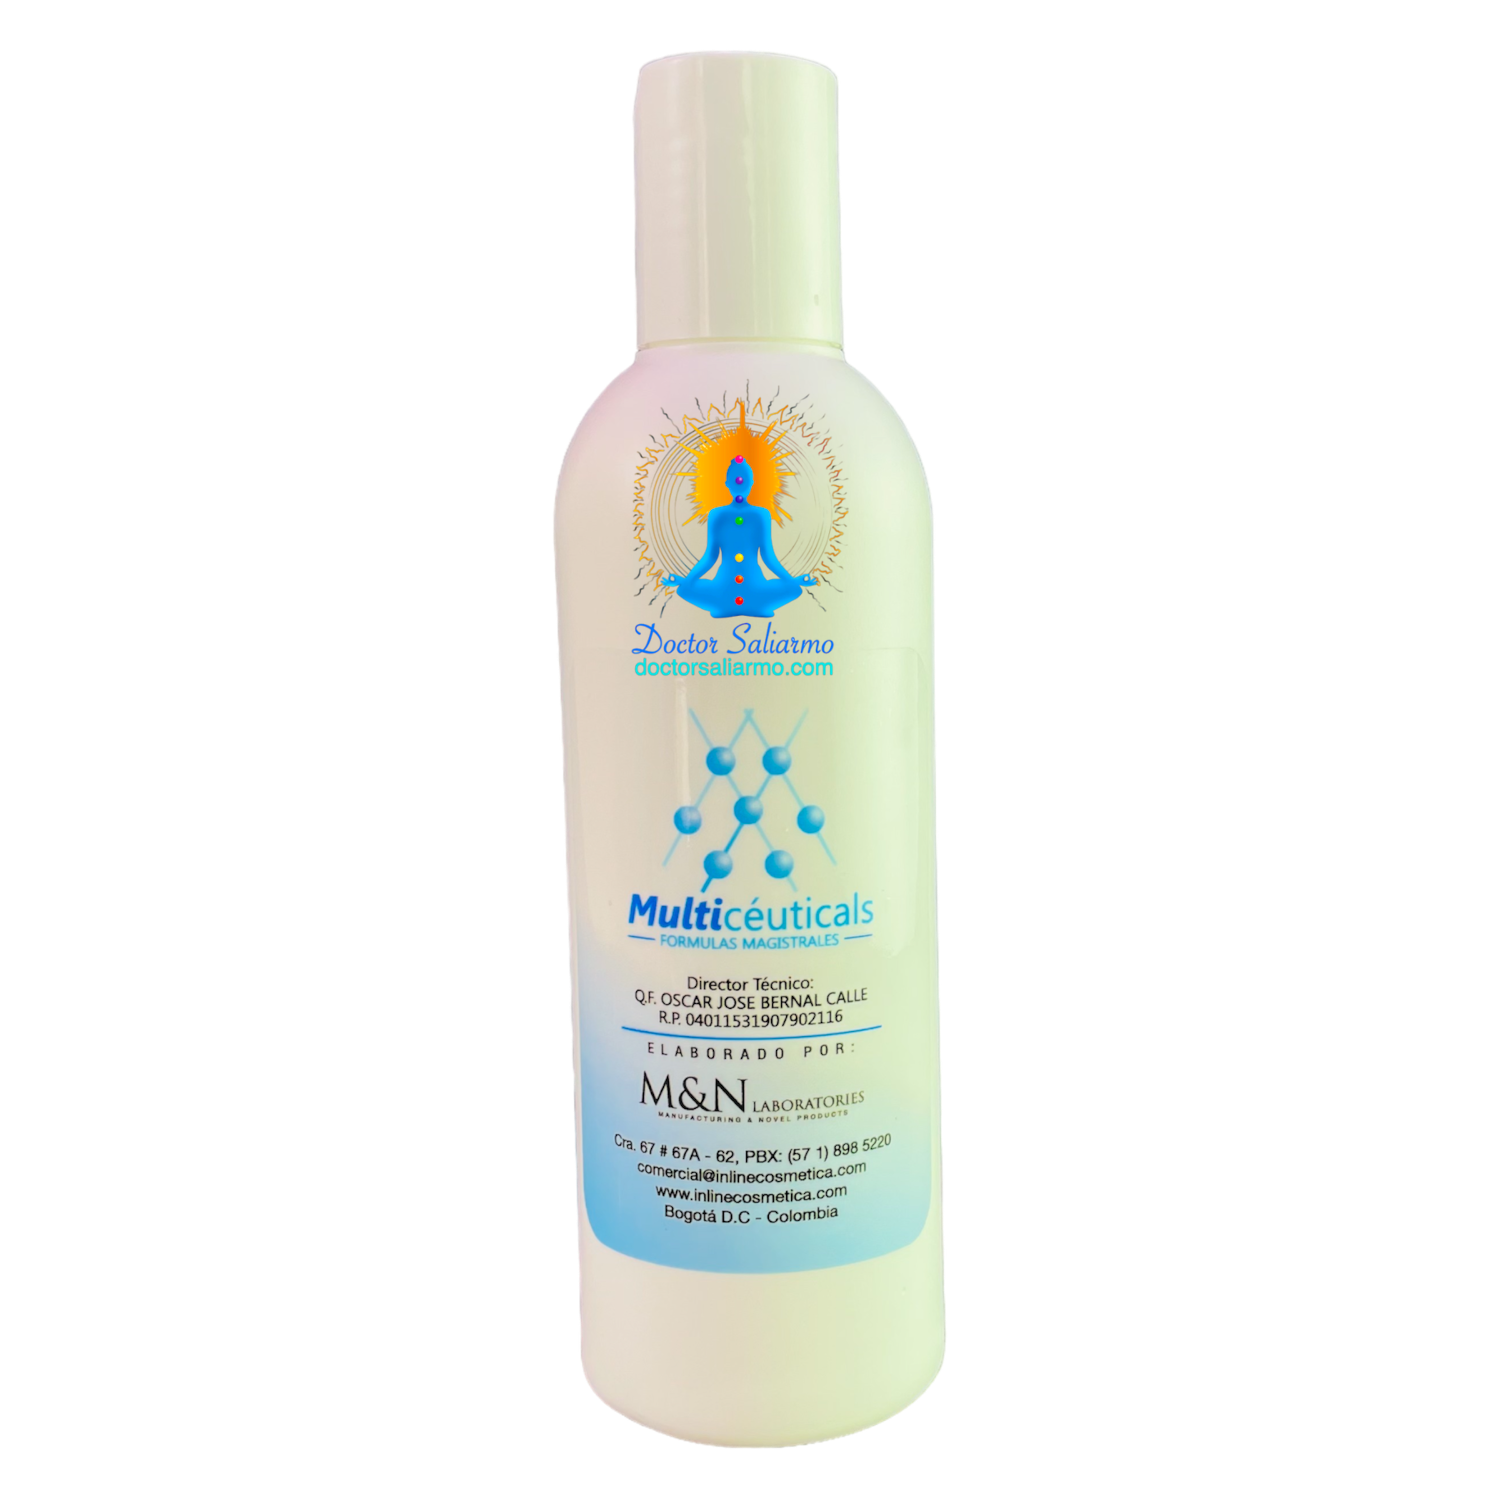 Gel hidratante de Aloe Vera y Vitamina E Multiceuticals ® hidrata y calma especialmente util en protocolos de manejo del acne